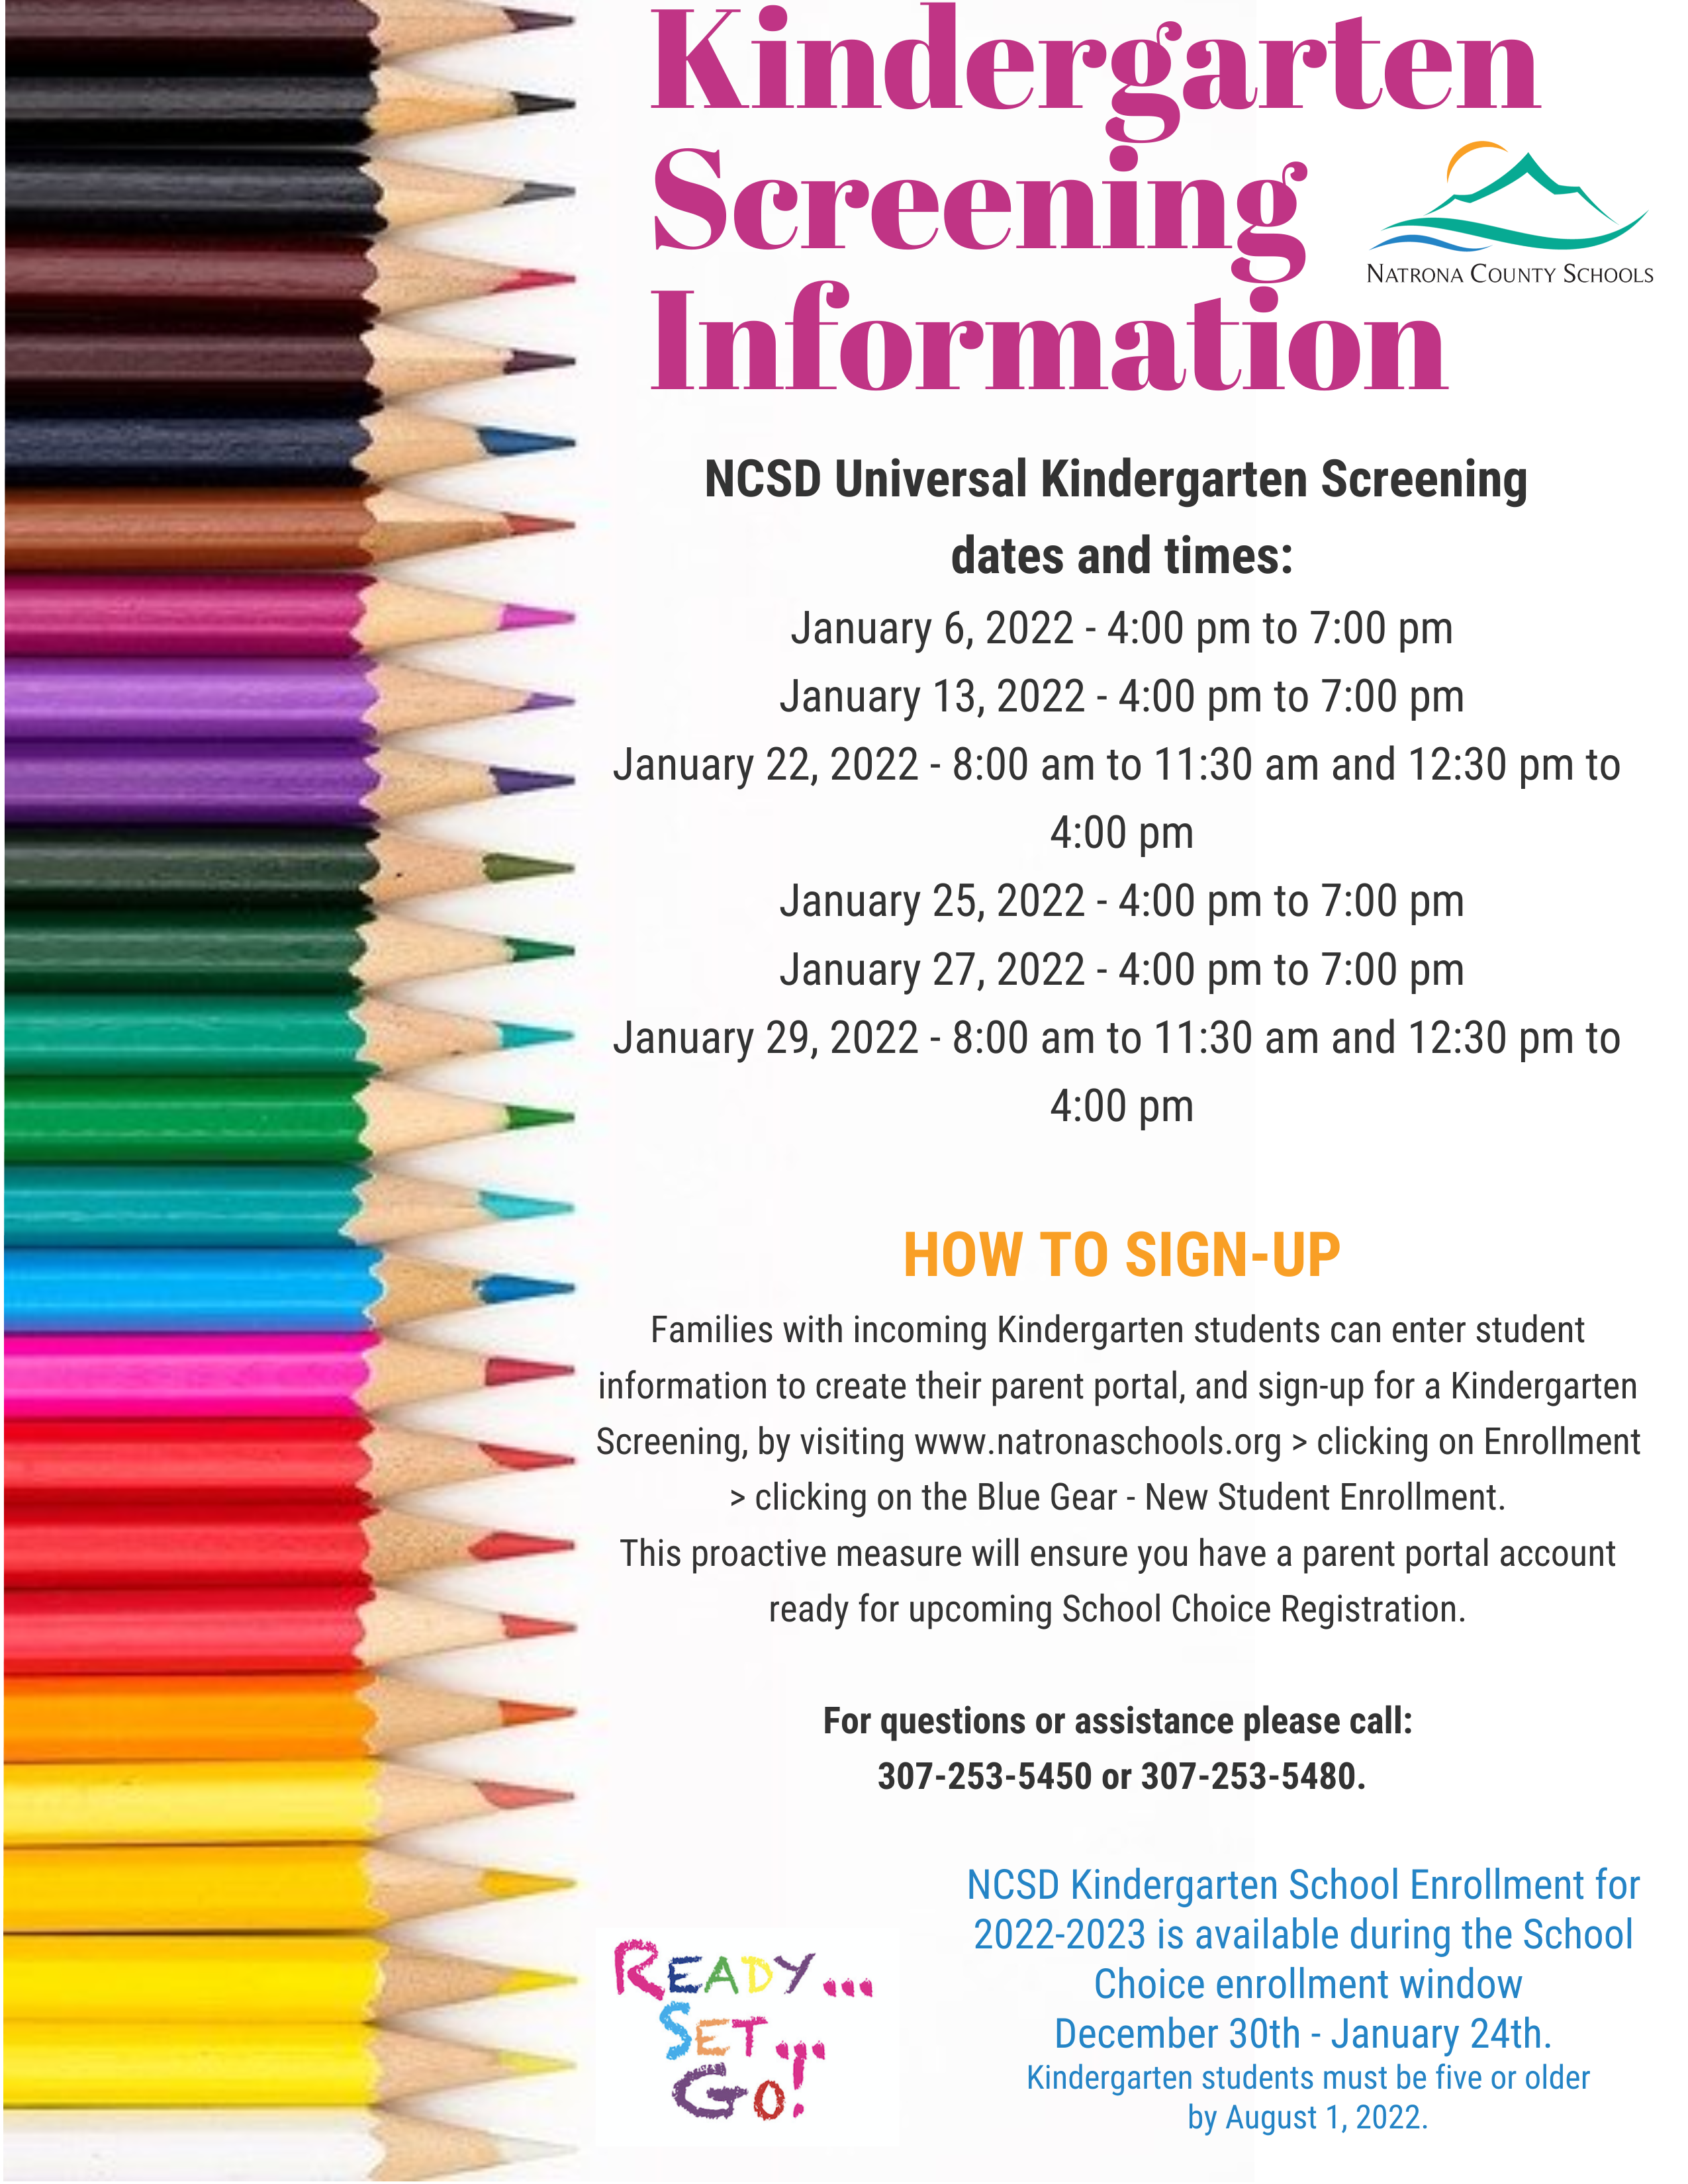 2022 Kindergarten Screening Information flyer